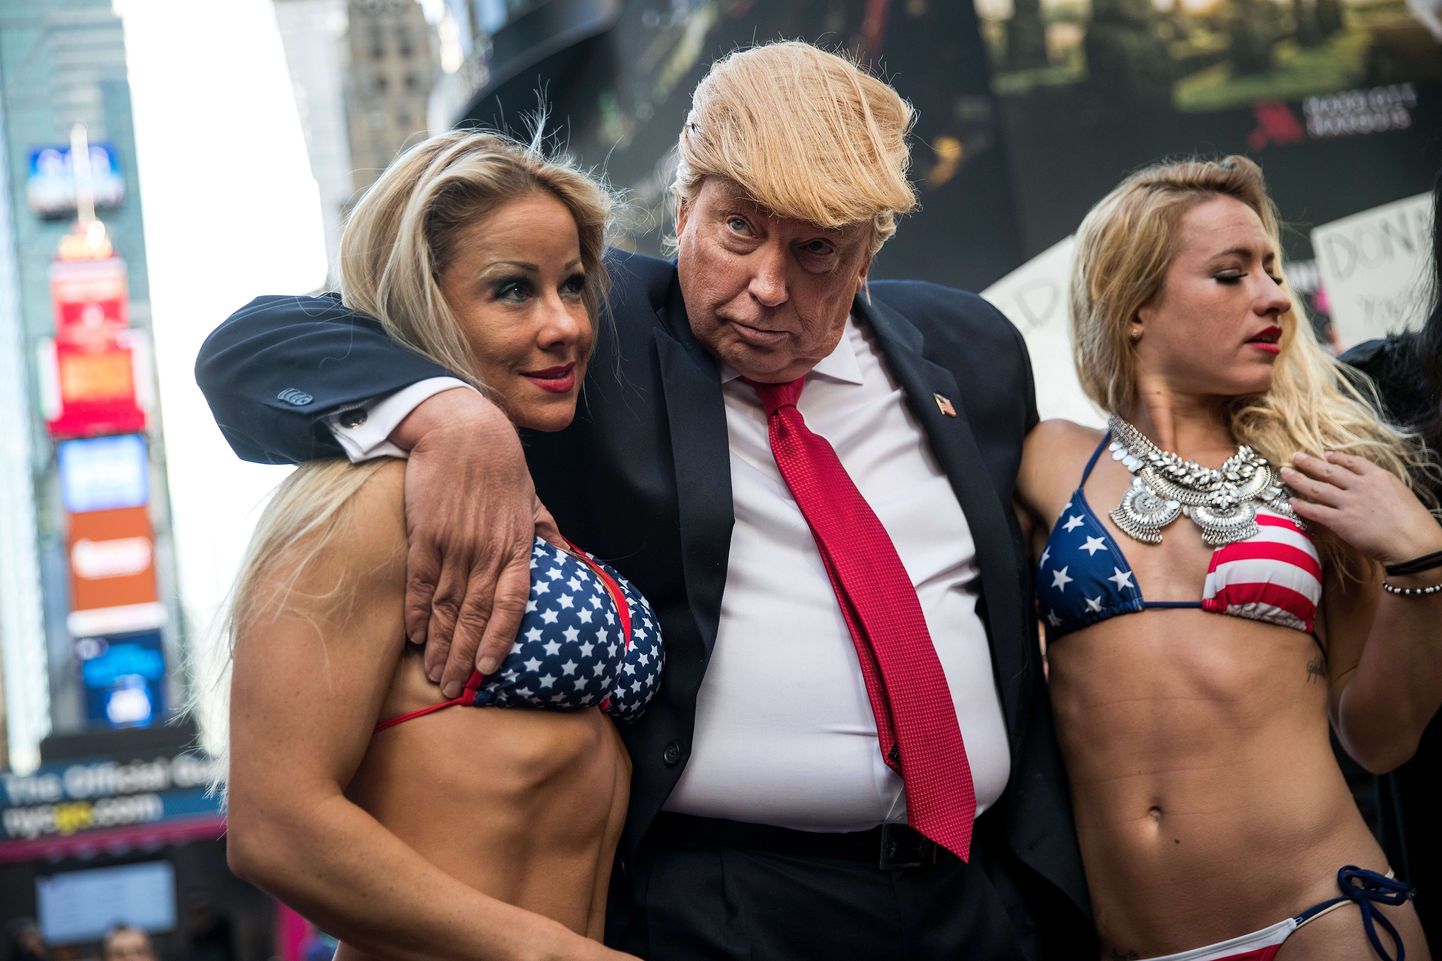 Donald Trumpiks kehastunud mees bikiinides naistega. Pilt on illustreeriv.